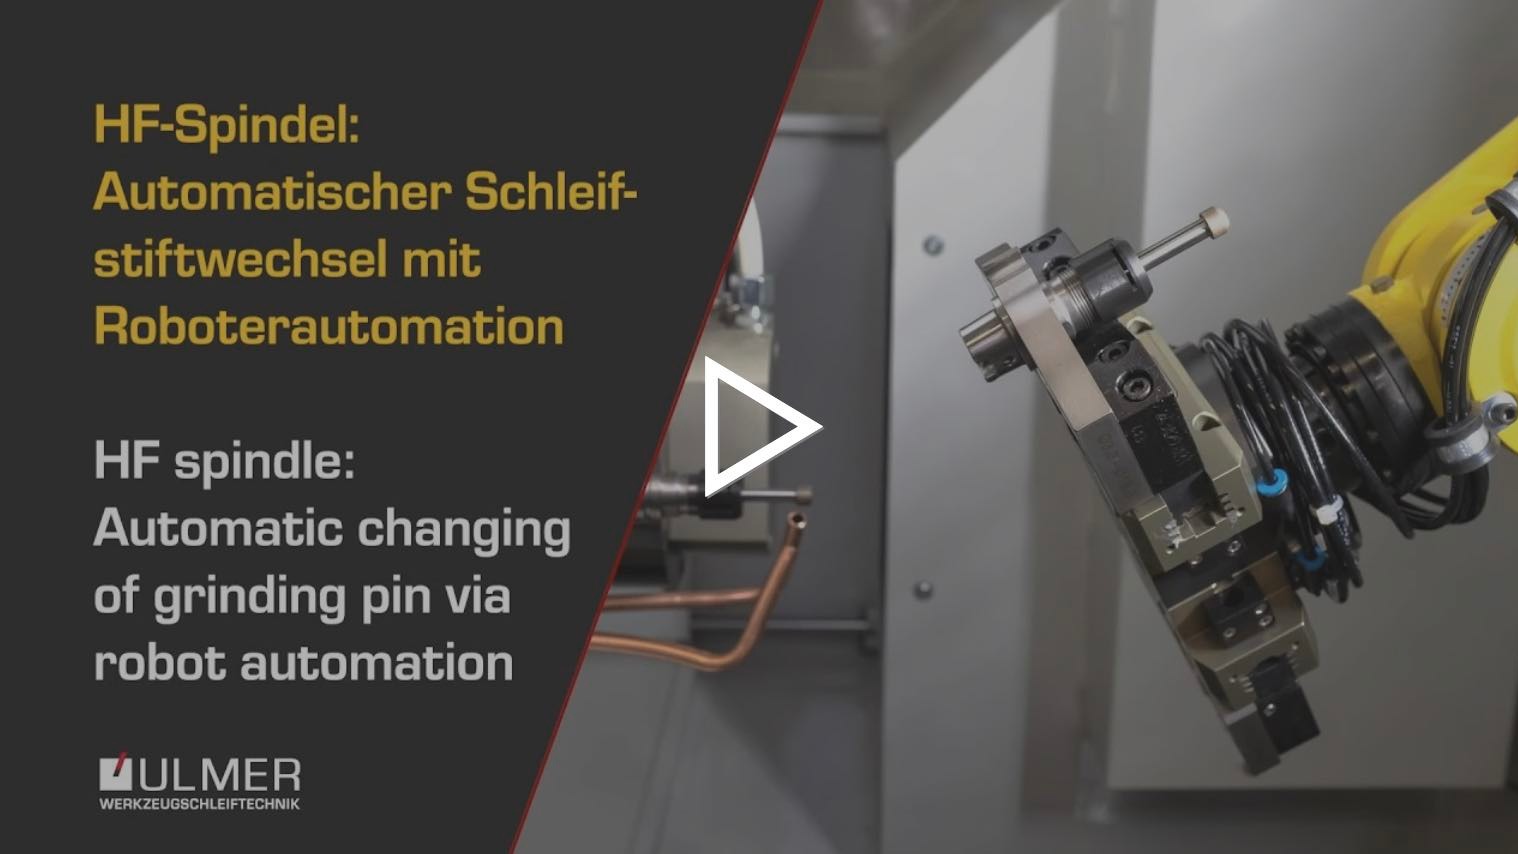 Das Video zeigt eine Nahaufnahme von dem Automatischen Schleifstiftwechselvorgang mit der Roboterautomation